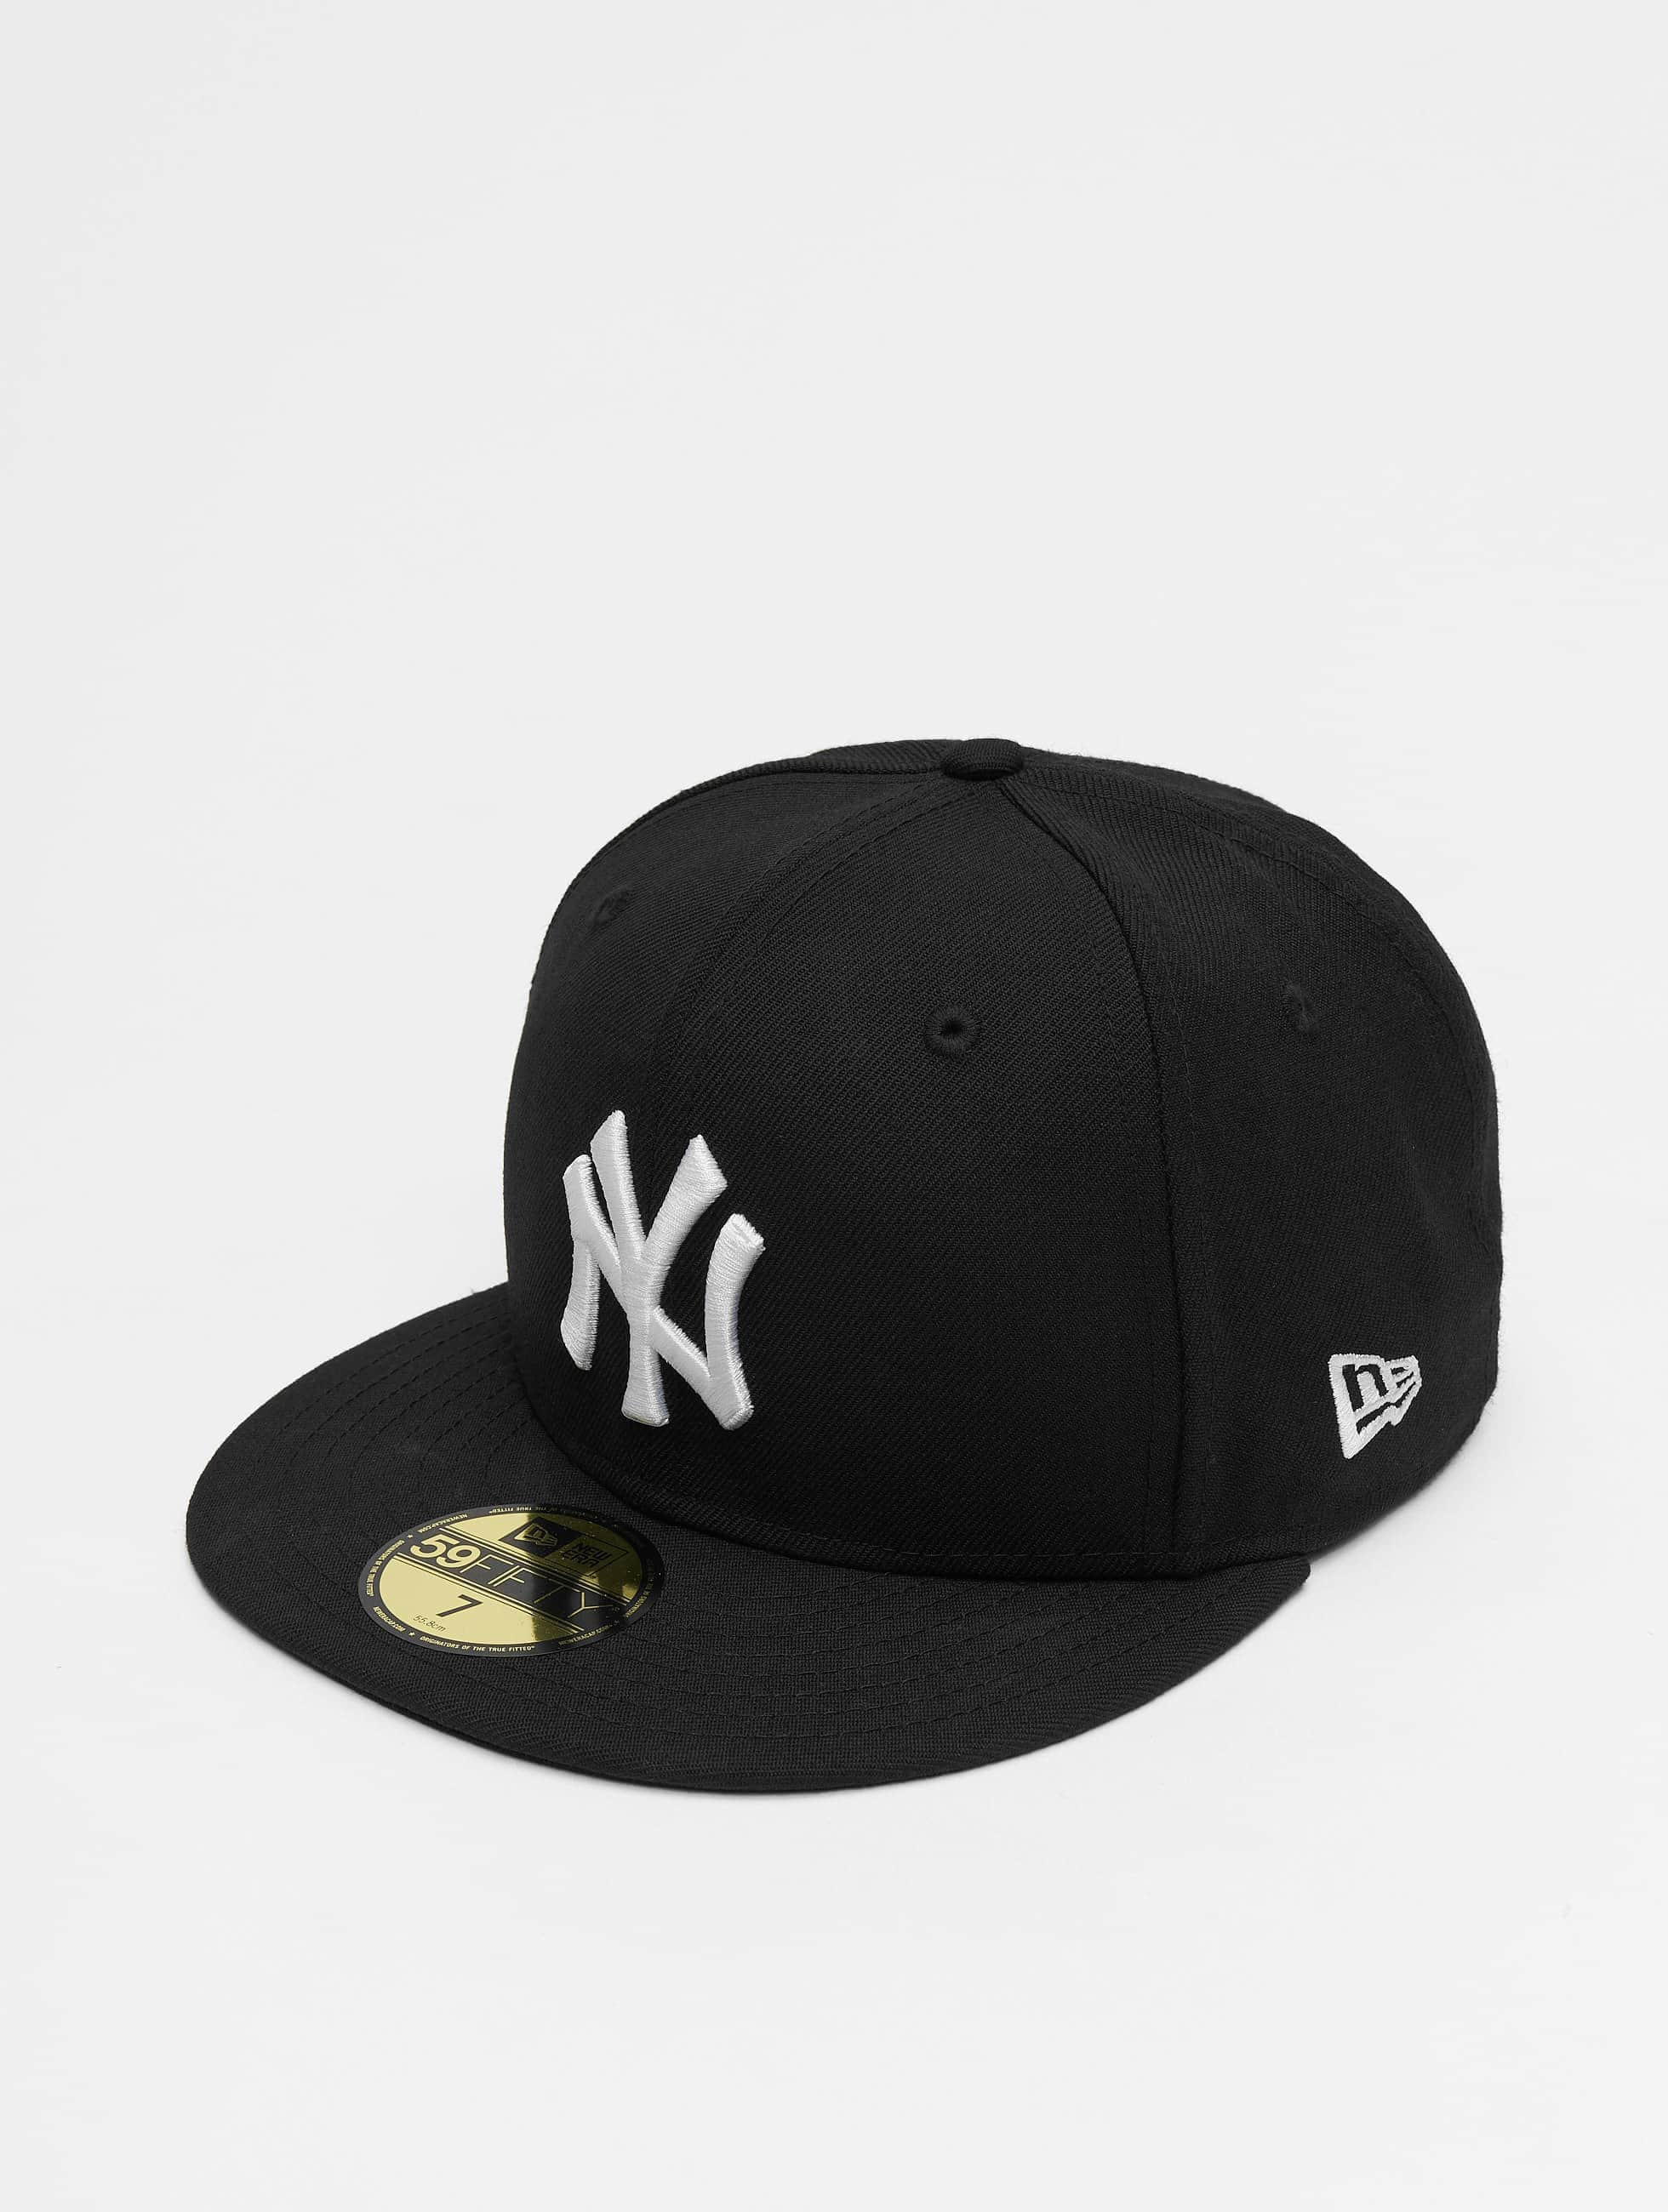 Oogverblindend Raap bladeren op Belegering New Era Cap / Fitted Cap MLB Basic NY Yankees in zwart 5238